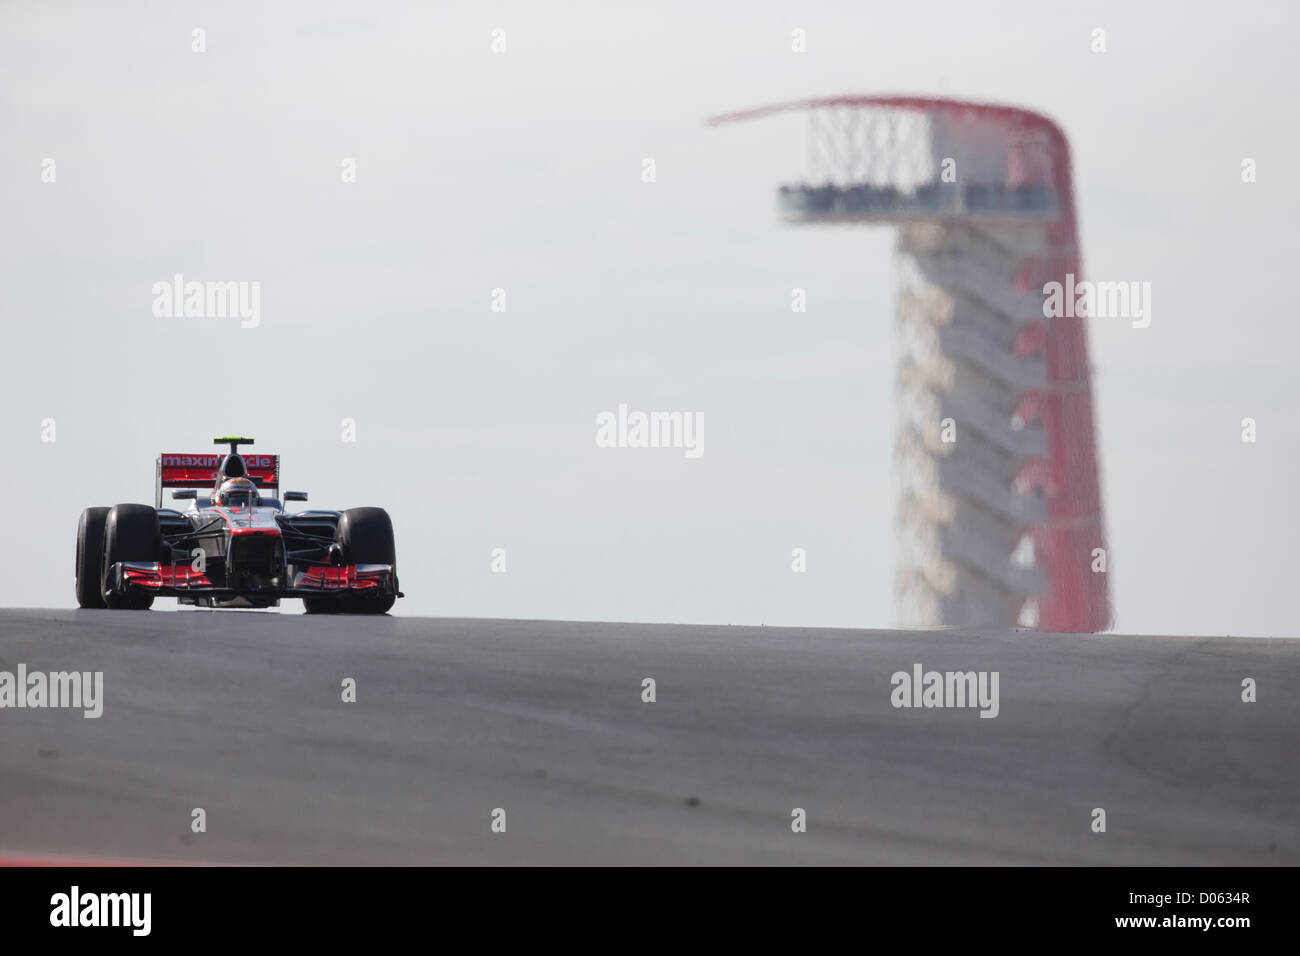 Le pilote britannique Lewis Hamilton passe la tour d'observation au cours de la première F1 Grand Prix des Etats-Unis à Austin, Texas Banque D'Images